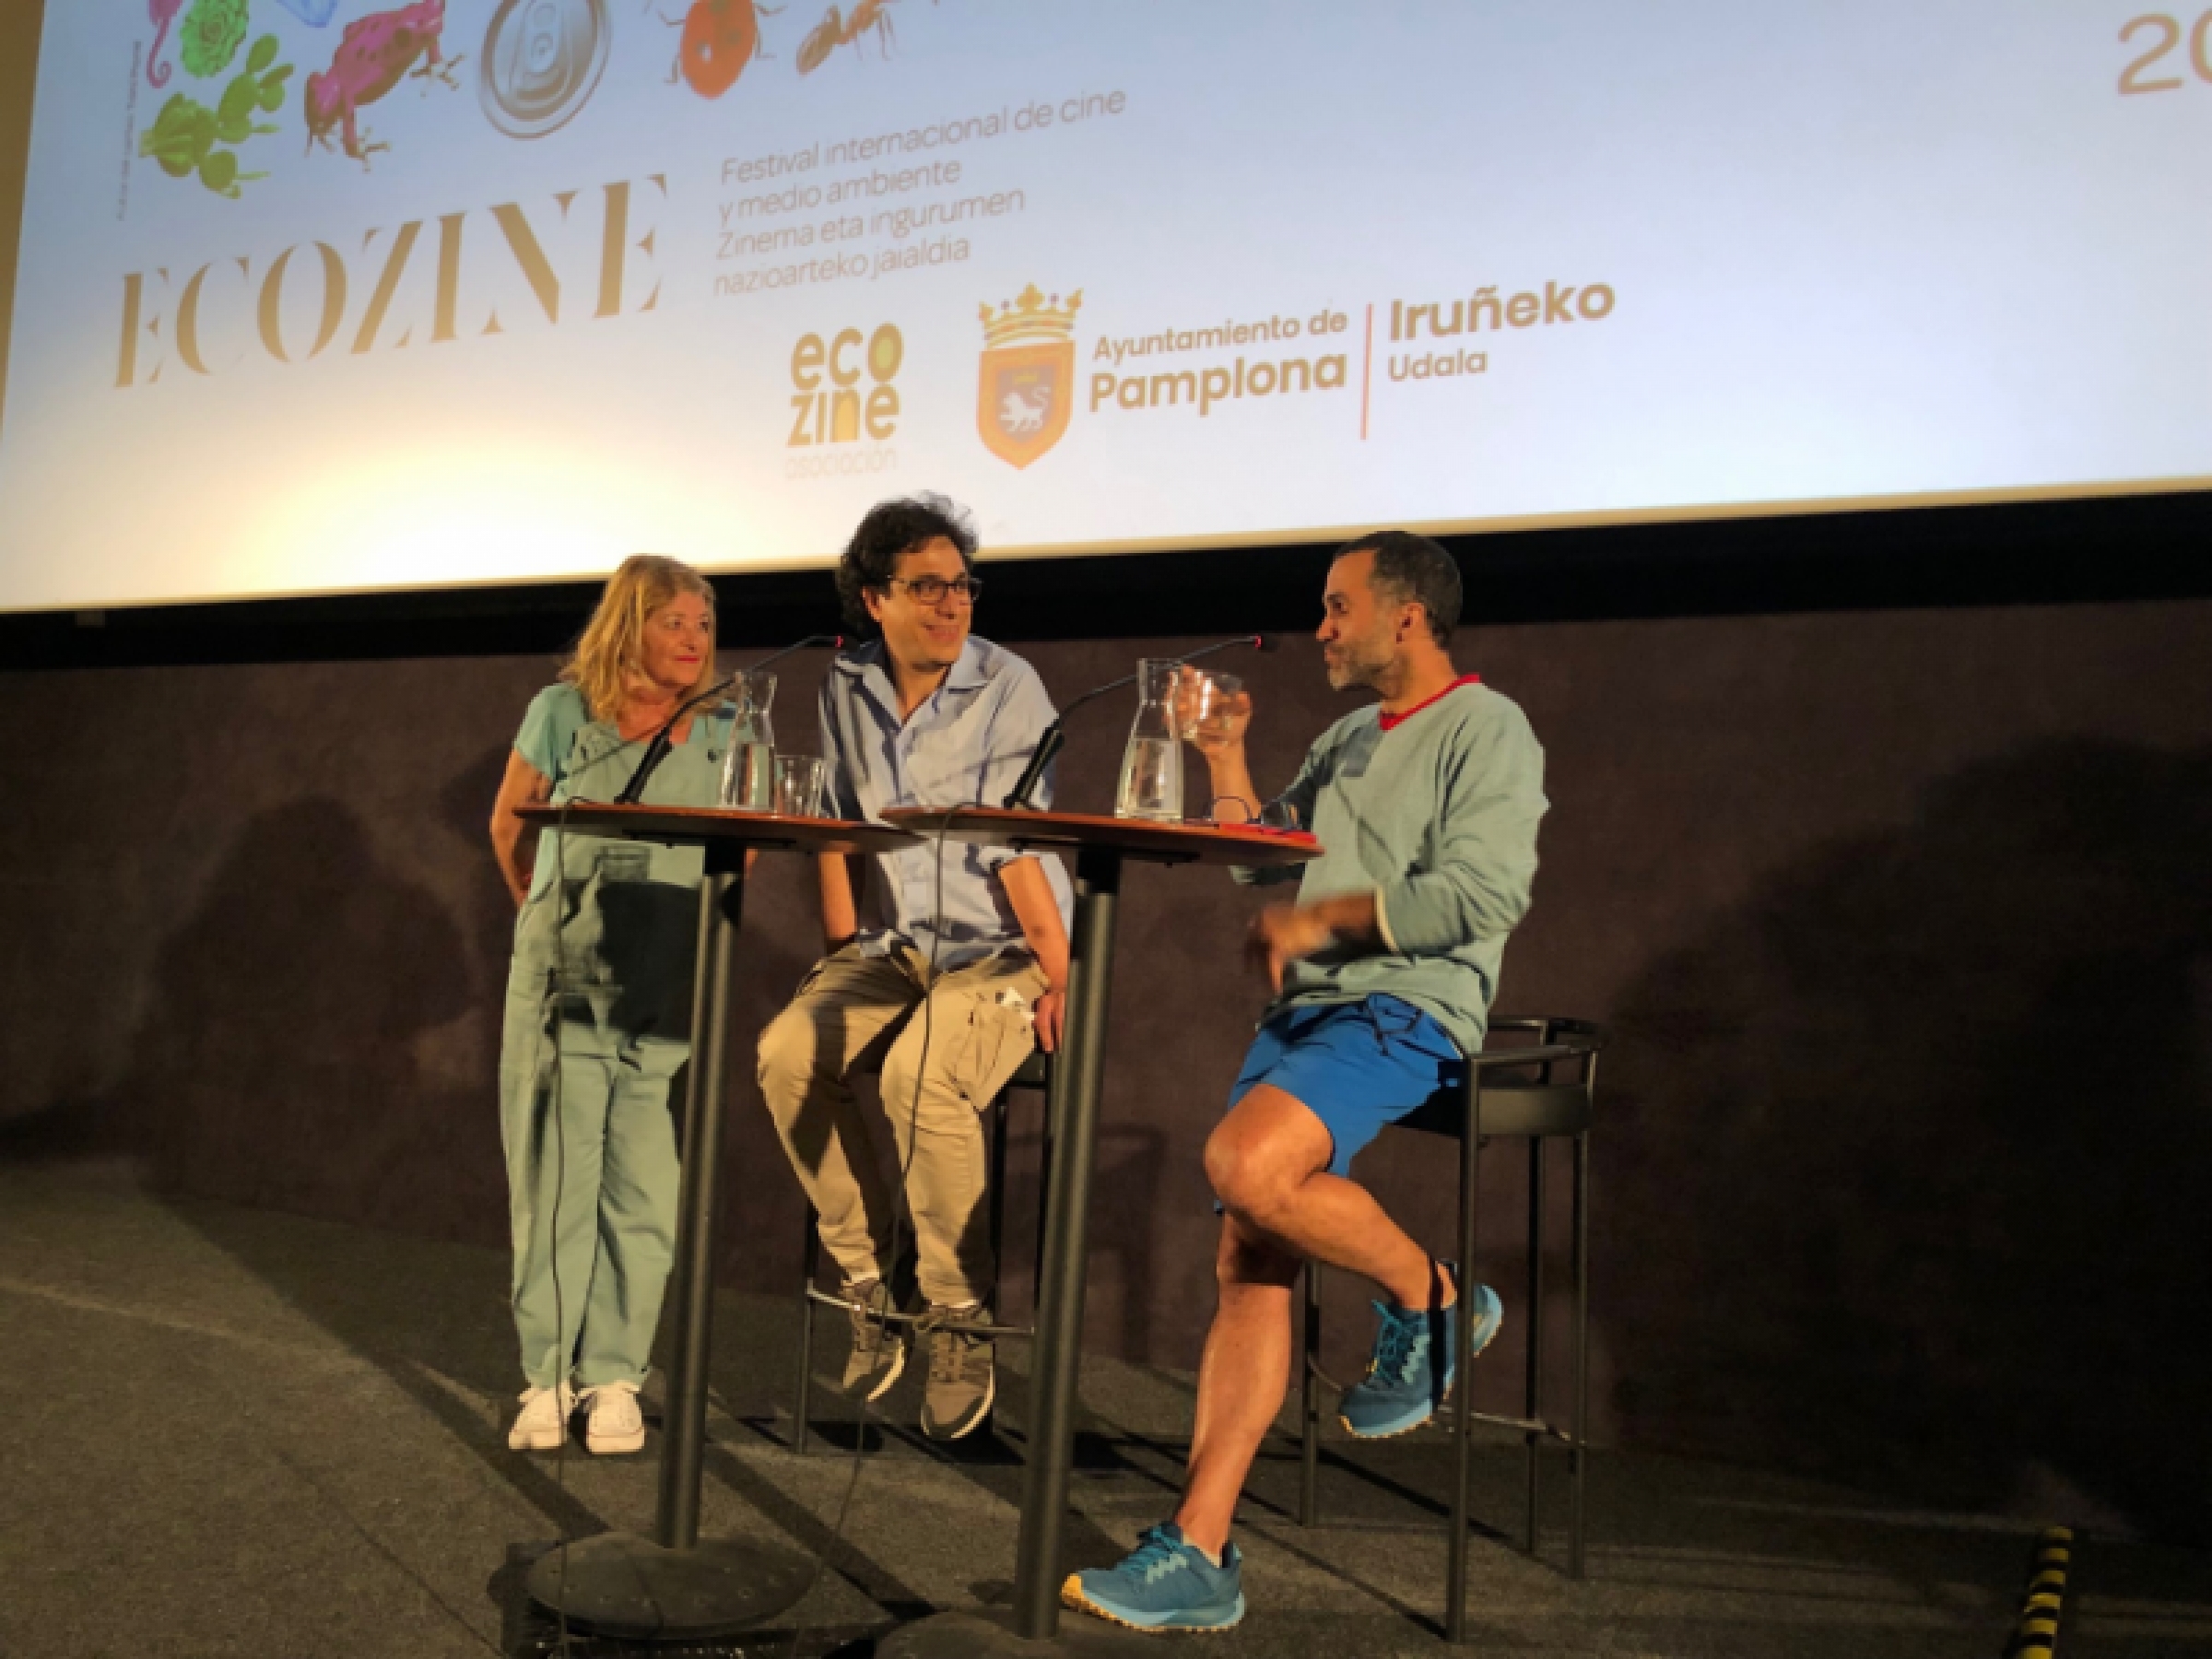 Celebra Ecozine Film Festival su quinta edición en Pamplona con un creciente público fiel a las temáticas medioambientales